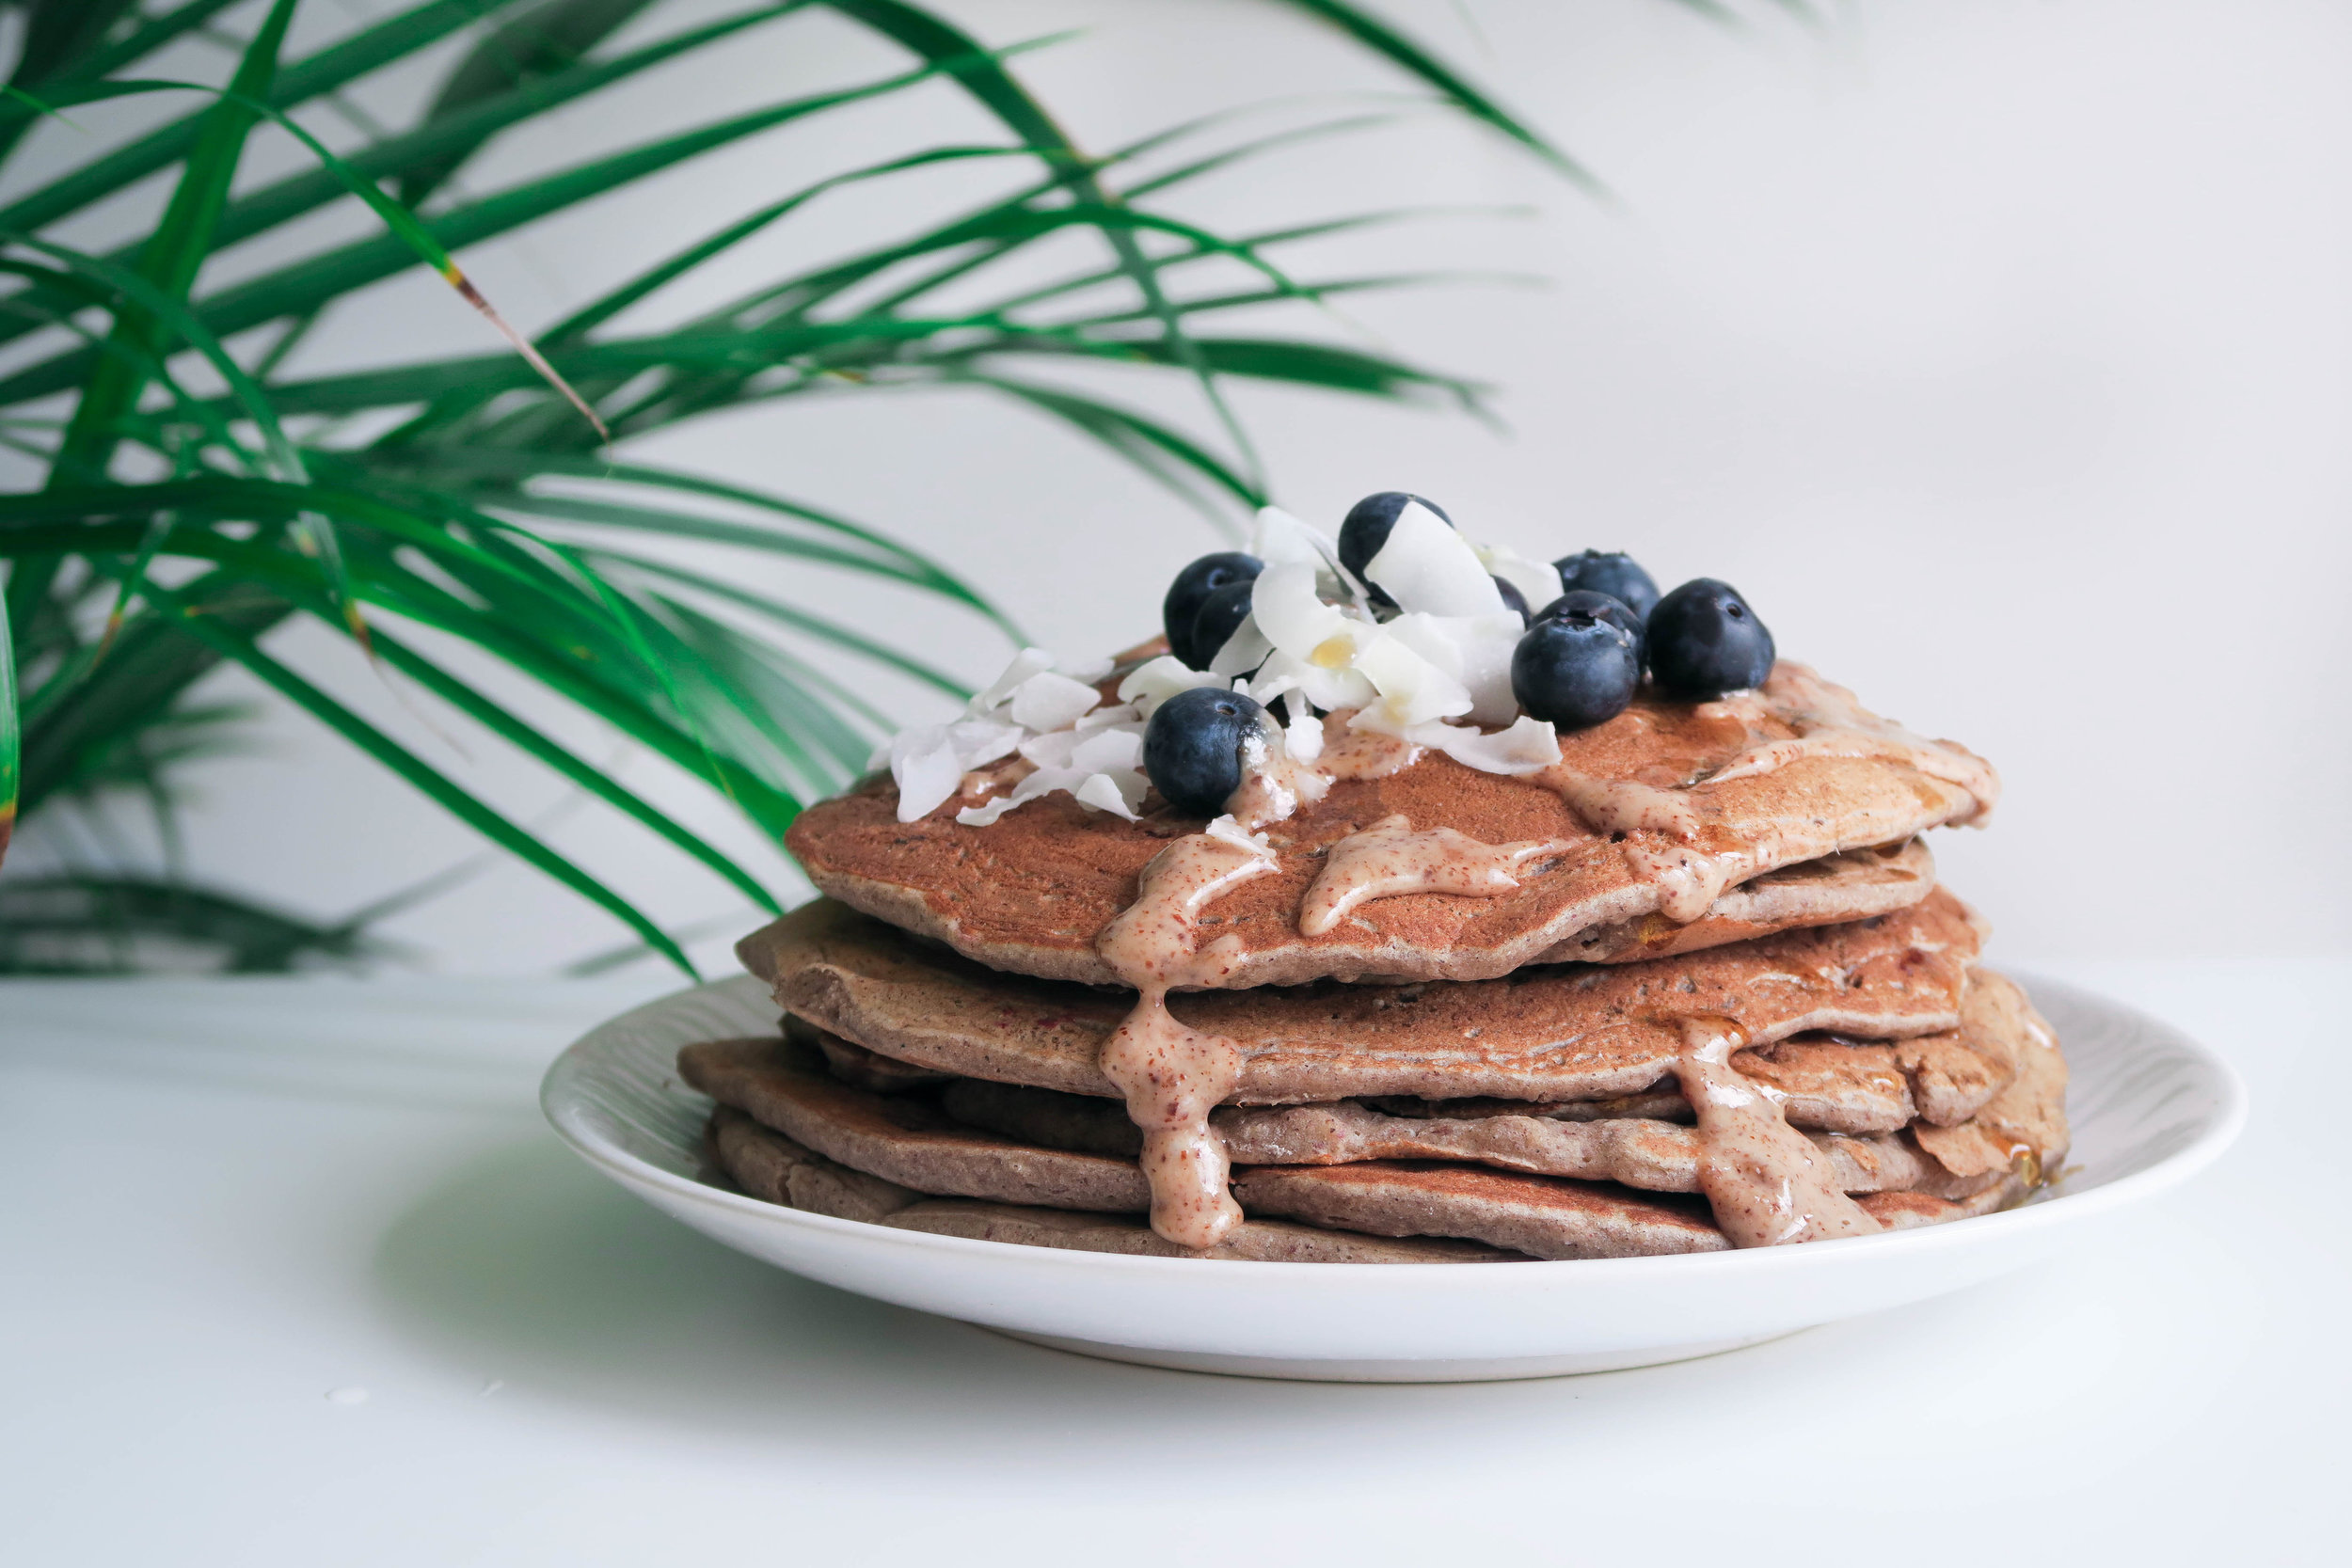 Recette des pancakes healthy aux fibres et protéines